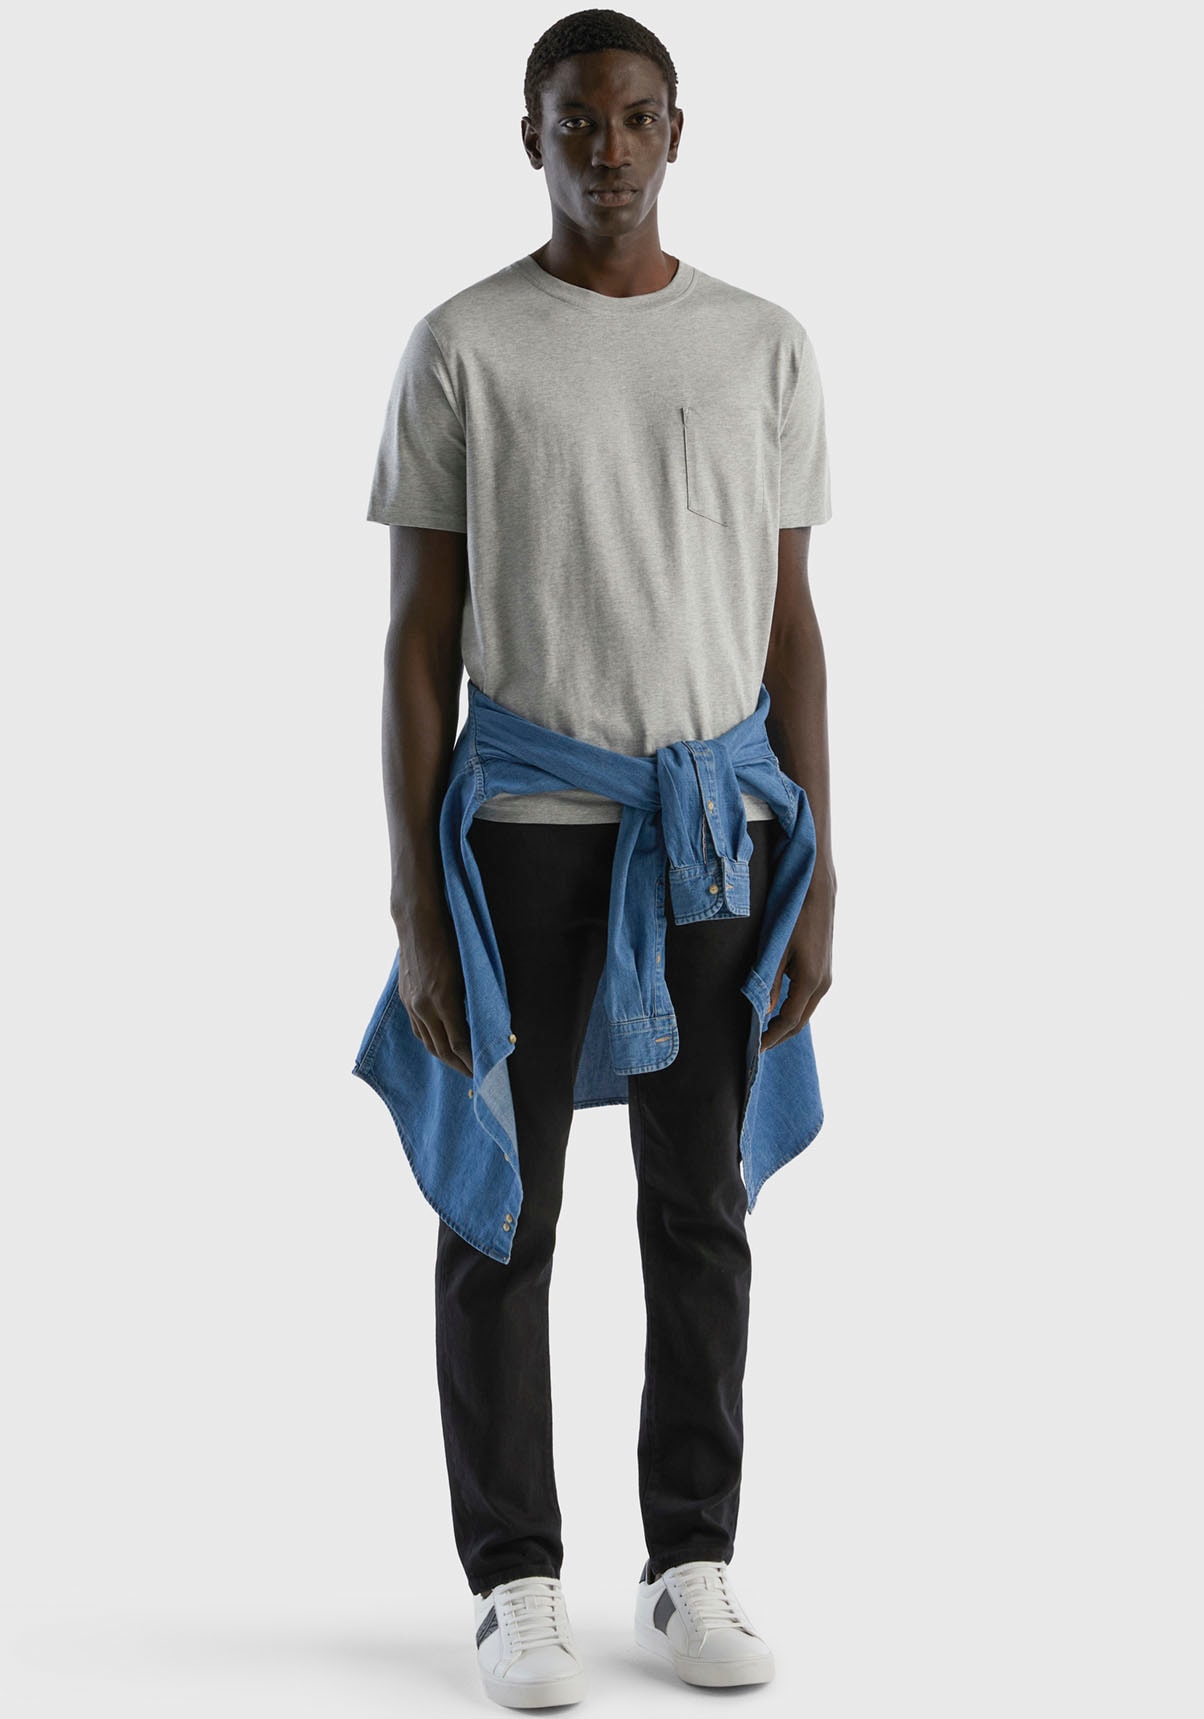 aufgesetzter mit Brusttasche Benetton T-Shirt, Colors United of kaufen